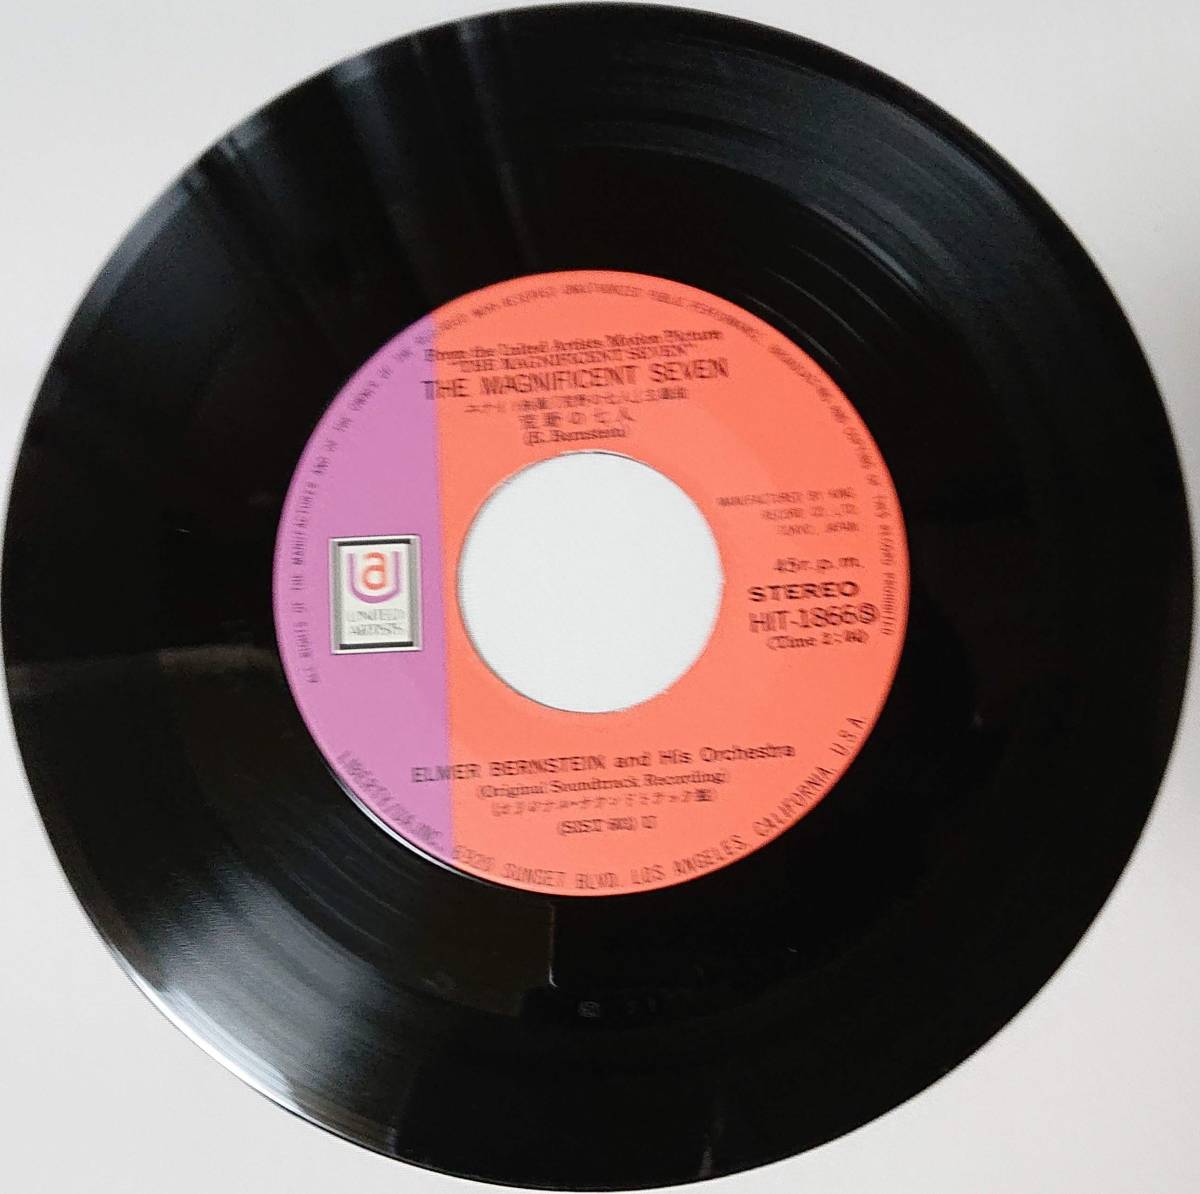 エルマー・バーンステイン楽団 : 荒野の七人 / 続・荒野の七人 国内盤 中古 アナログ EPシングルレコード盤 1972年 HIT-1866 M2-KDO-1255_画像3